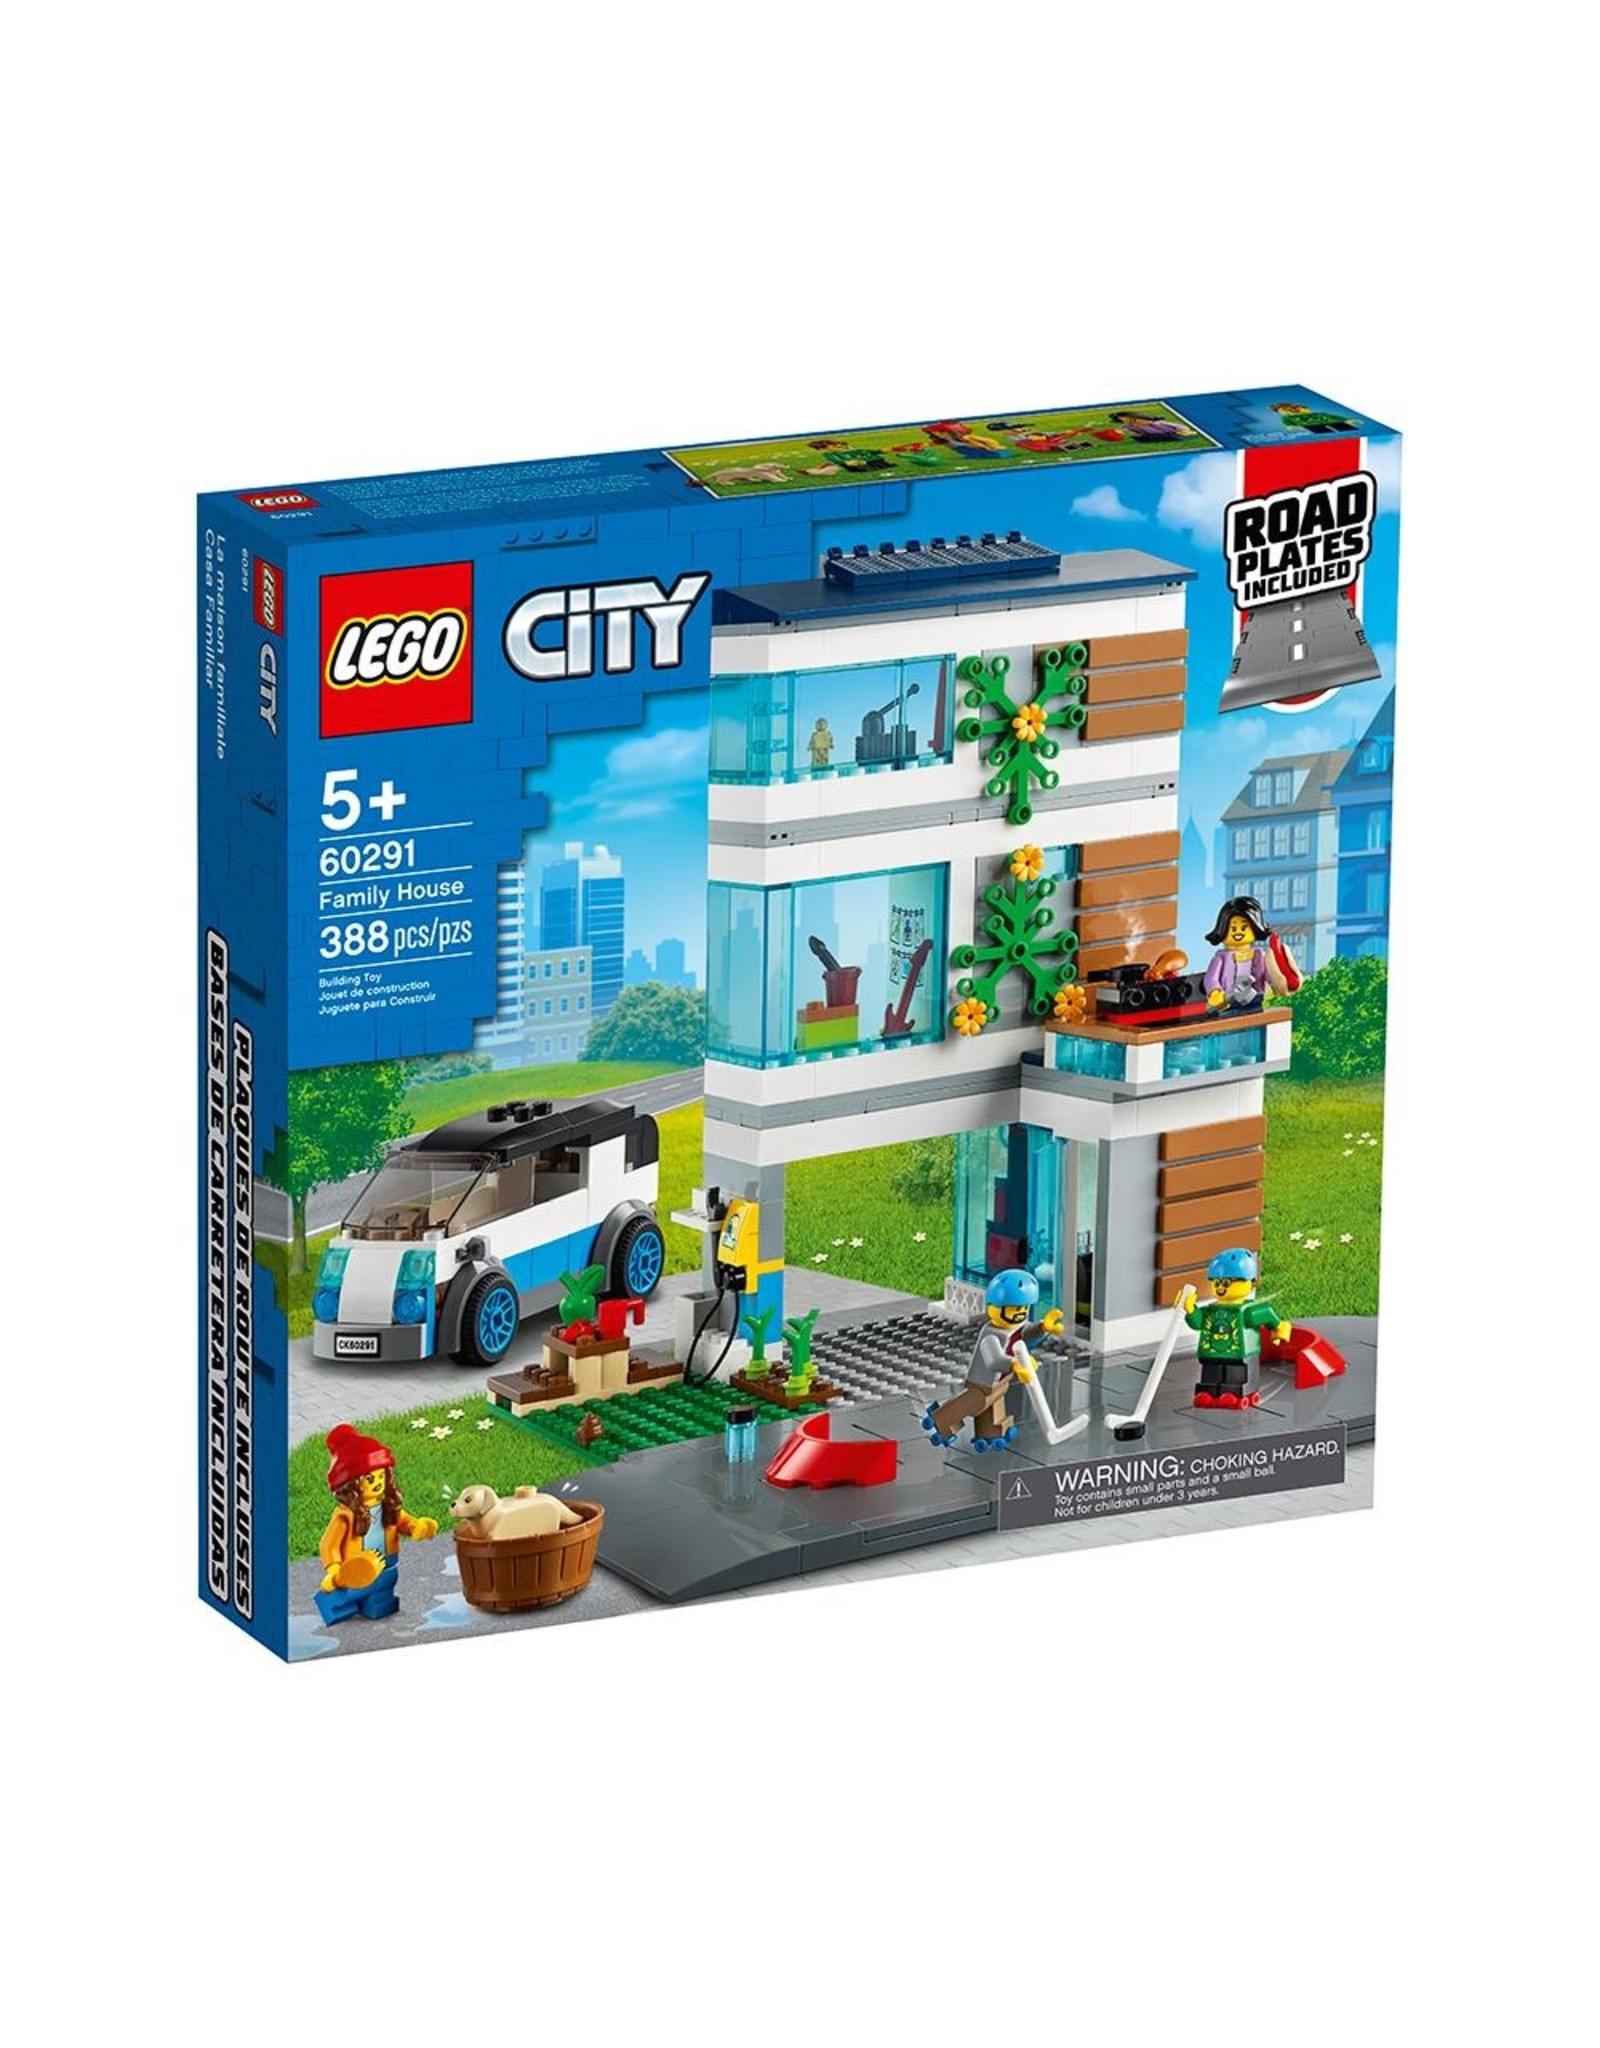 LEGO City 60291 Family House